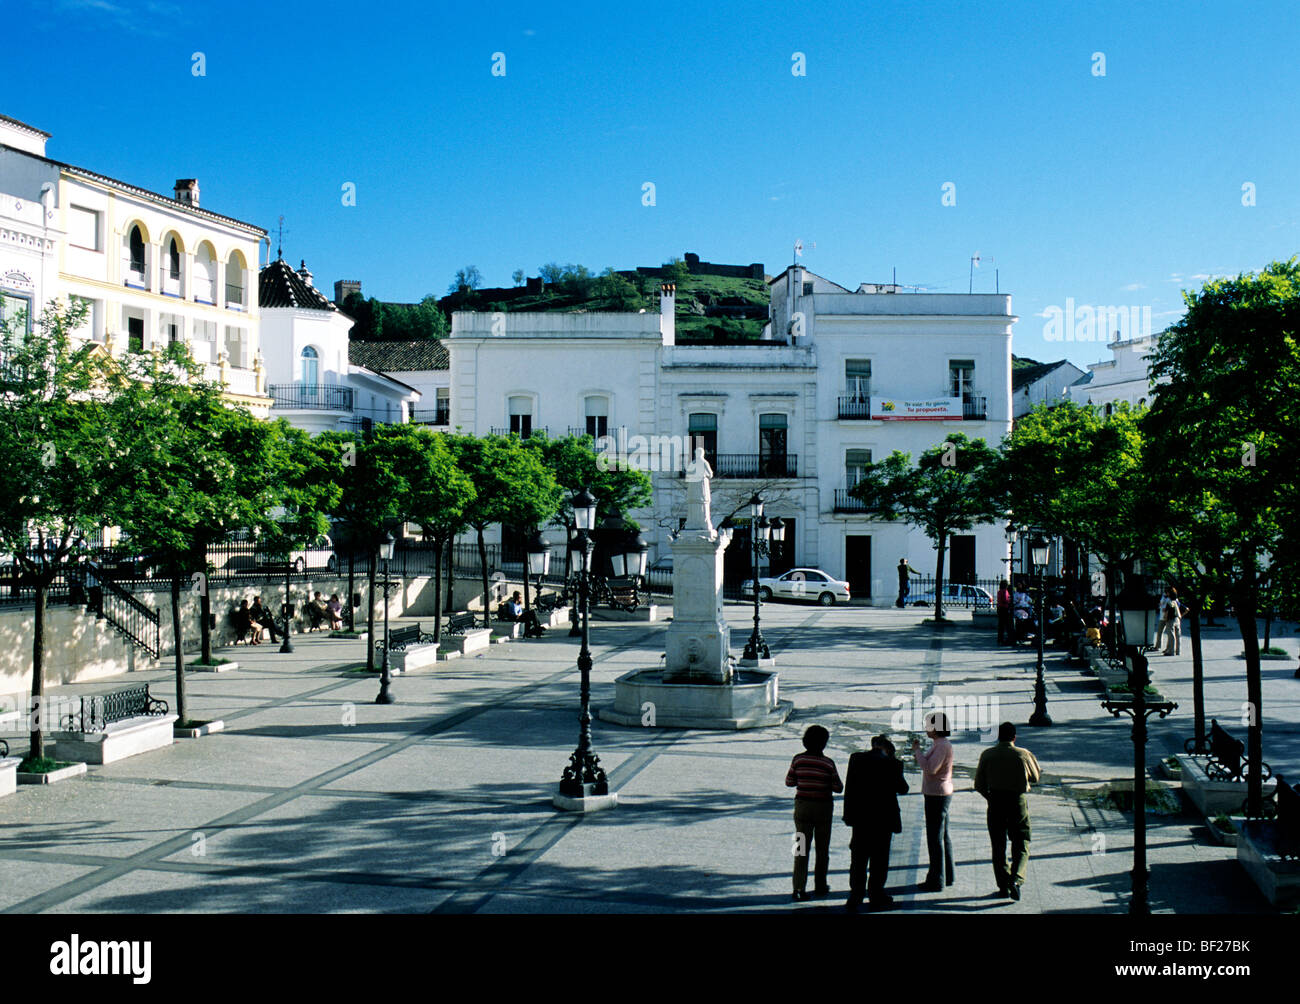 La centrale piazza (Plaza Alta) in Aracena, una città situata nella provincia di Huelva in Spagna la regione Andalusia Foto Stock